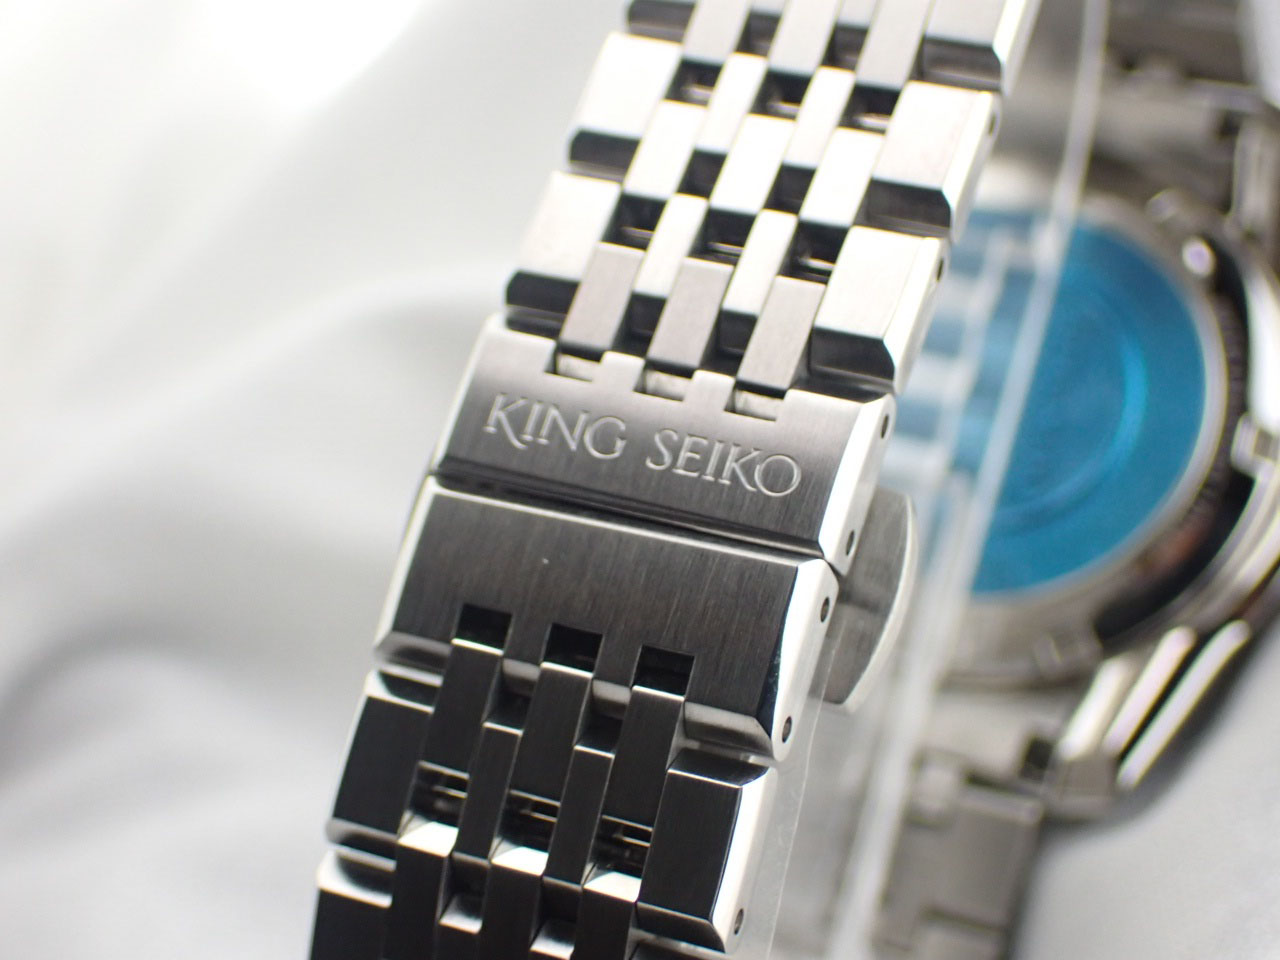 SEIKO (セイコー) KING SIKO キングセイコー SDKS001 6R31-00D0 シルバー文字盤 自動巻き 美品